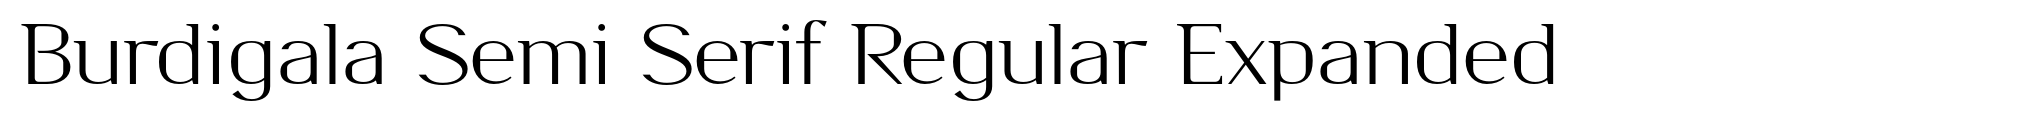 Burdigala Semi Serif Regular Expanded image